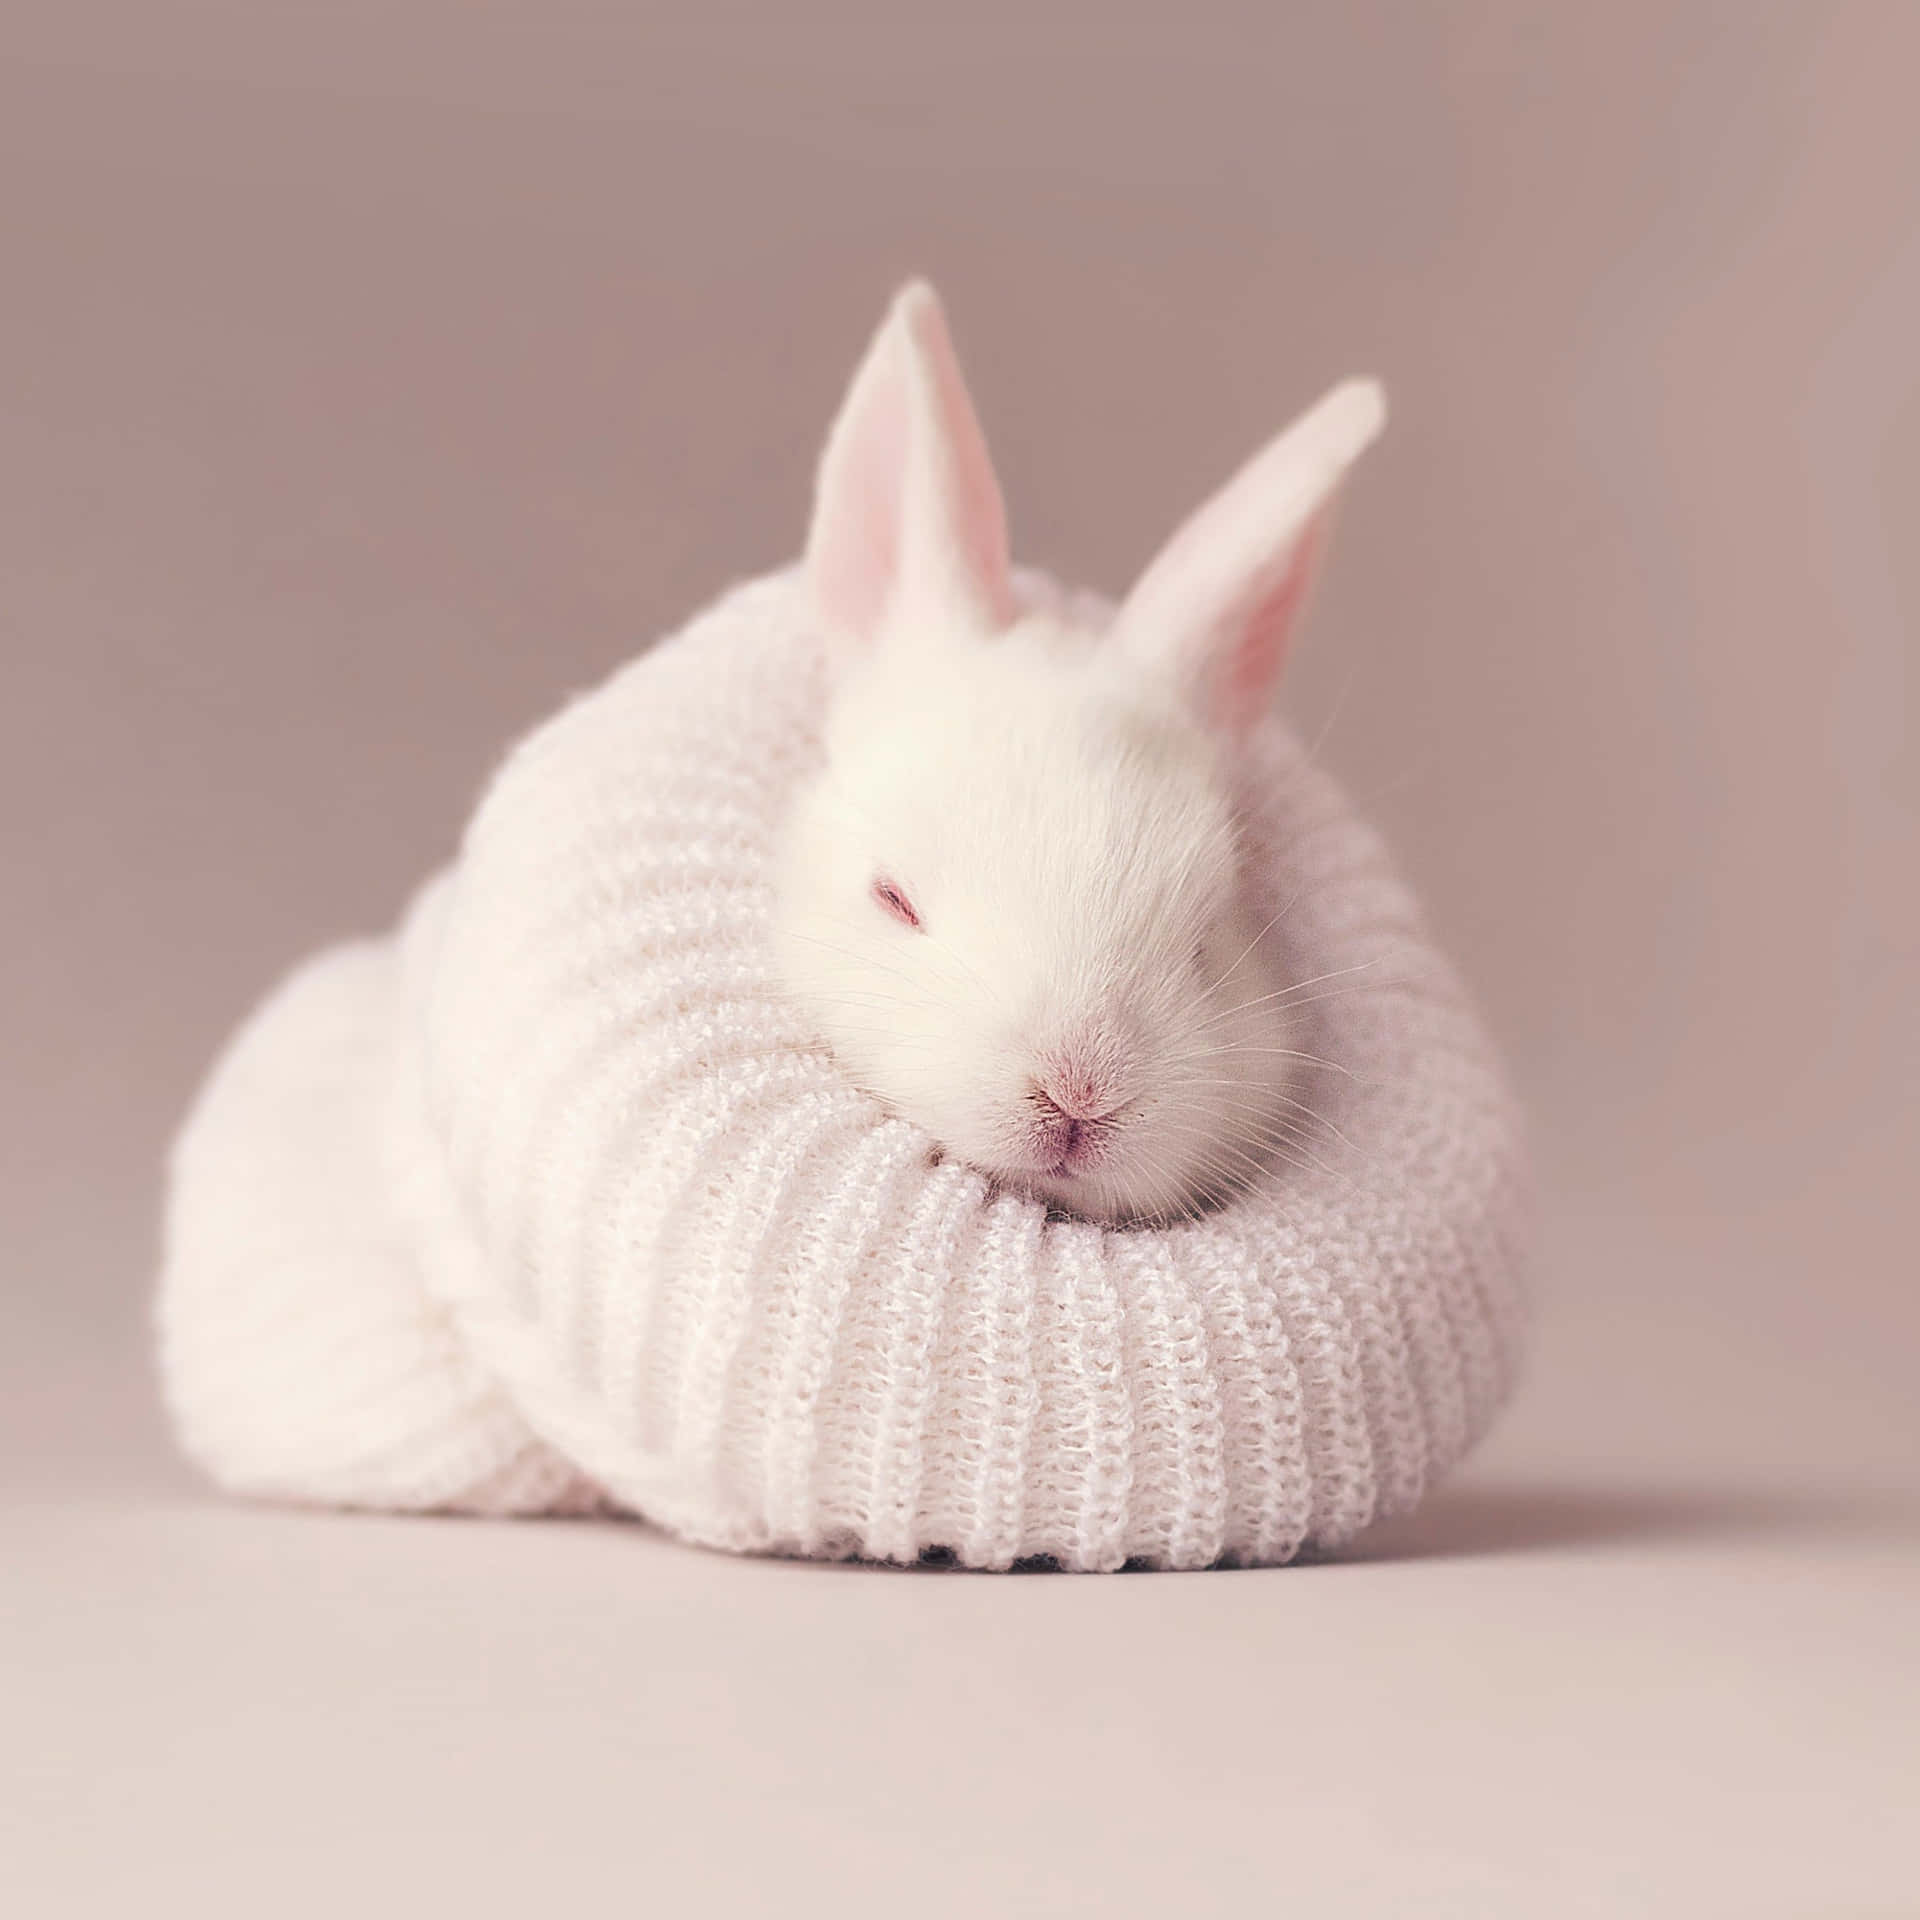 White Bunnyin Knitted Sweater Cozy Aesthetic.jpg Wallpaper